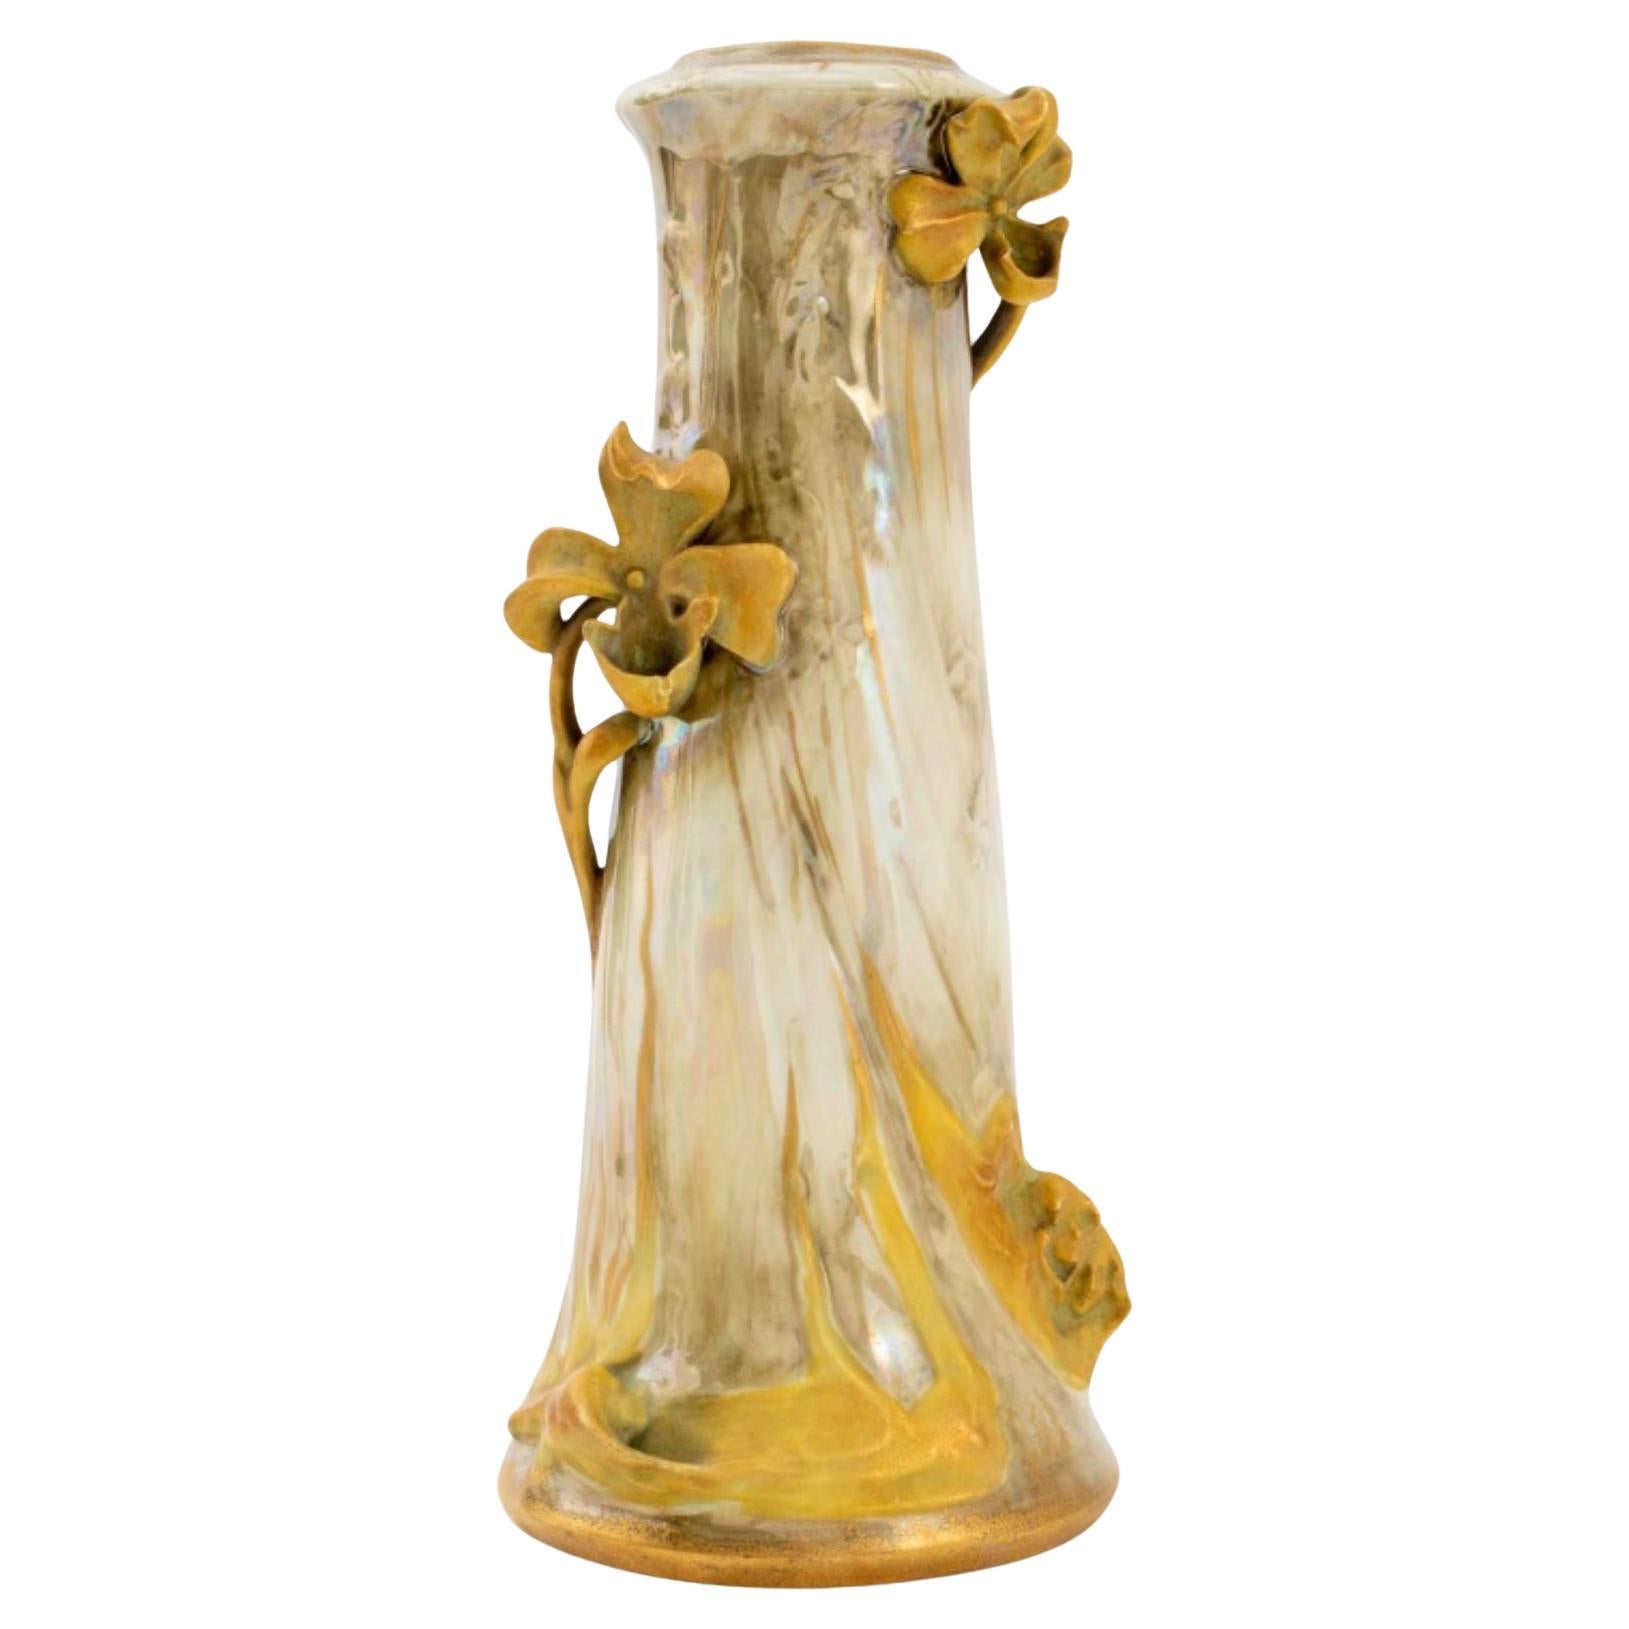 Turn-Teplitz-Vase aus Amphora-Keramik, um 1900